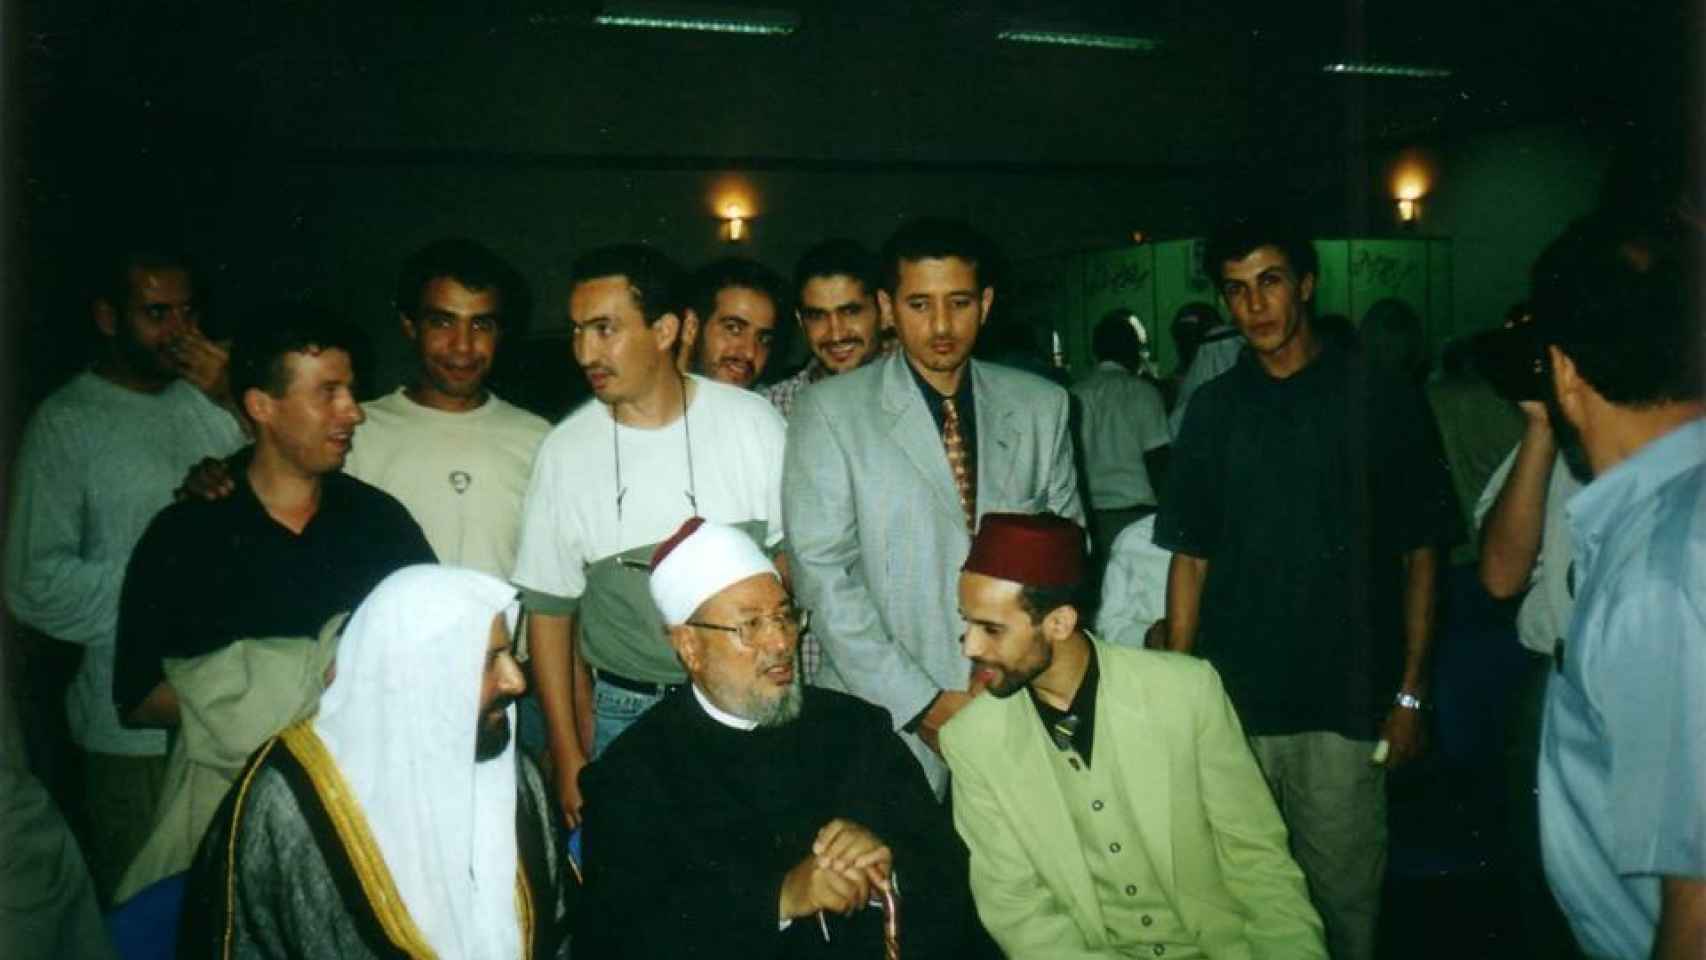 Rachid Boutarbouch, impulsor de la universidad islámica en Donostia, con Yusuf al-Qarada, líder intelectual de los Hermanos Musulmanes en Egipto.